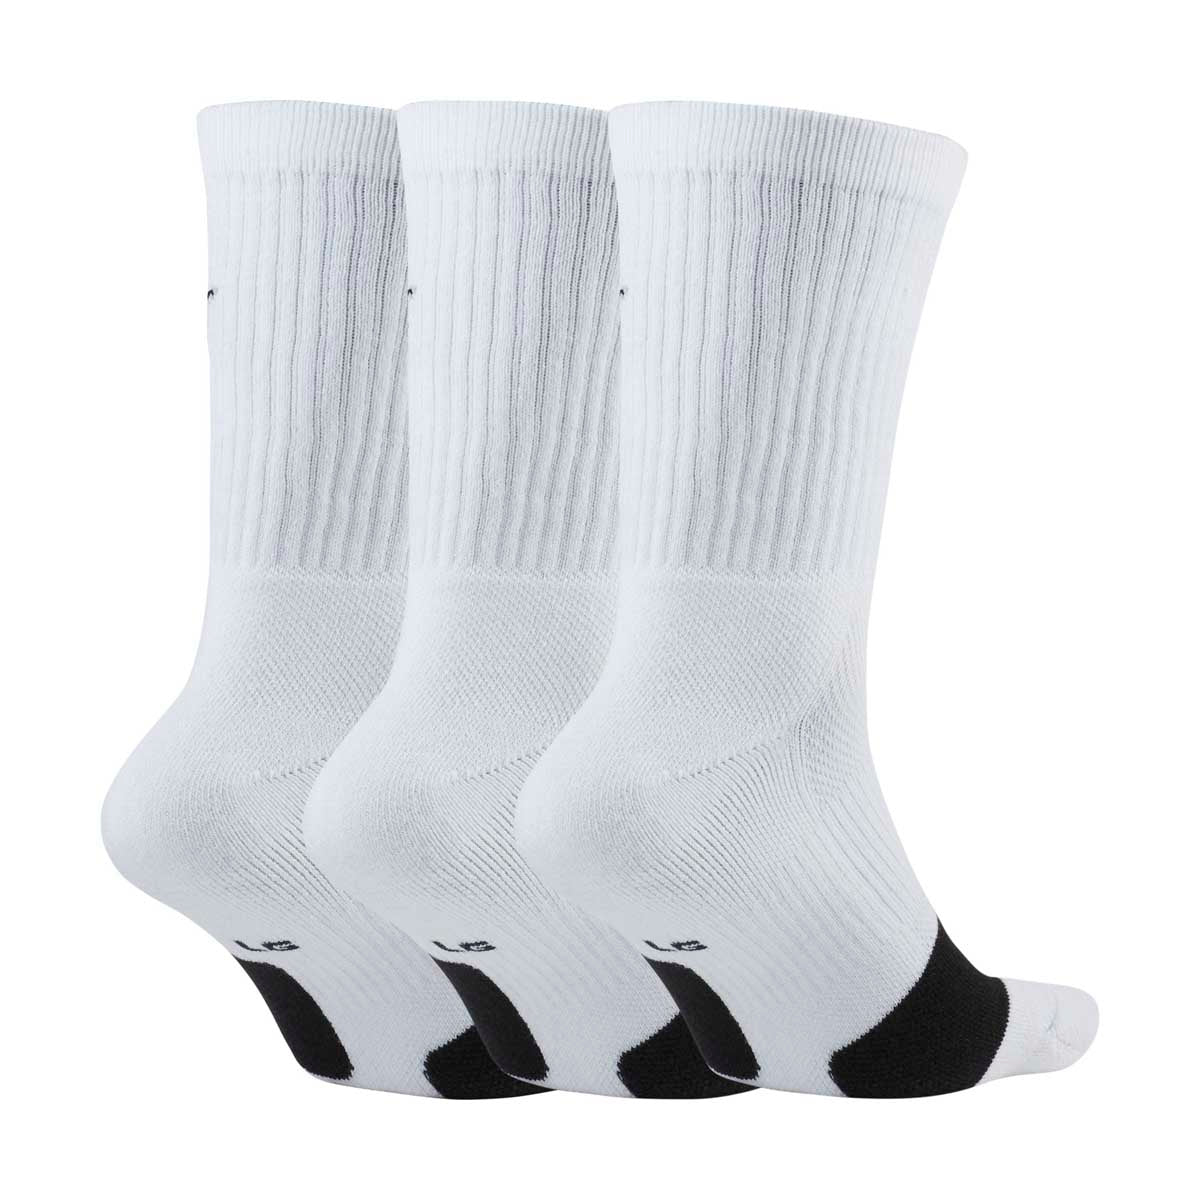 Everyday Nike White Socks